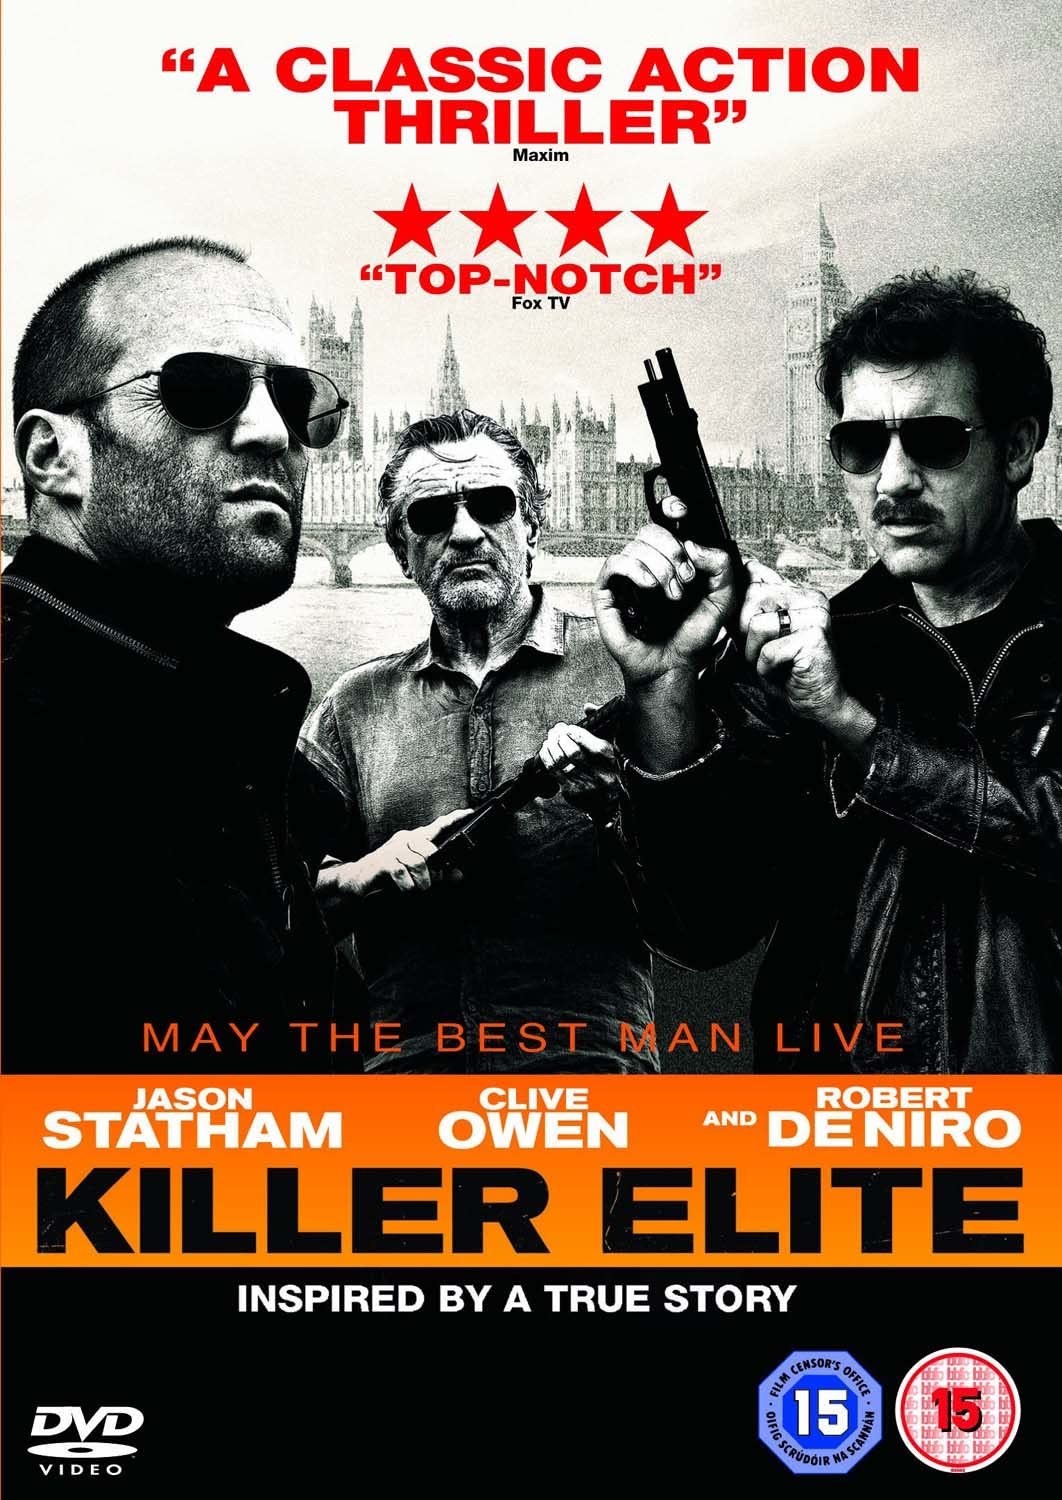 Killer Elite - Action/Thriller [DVD]